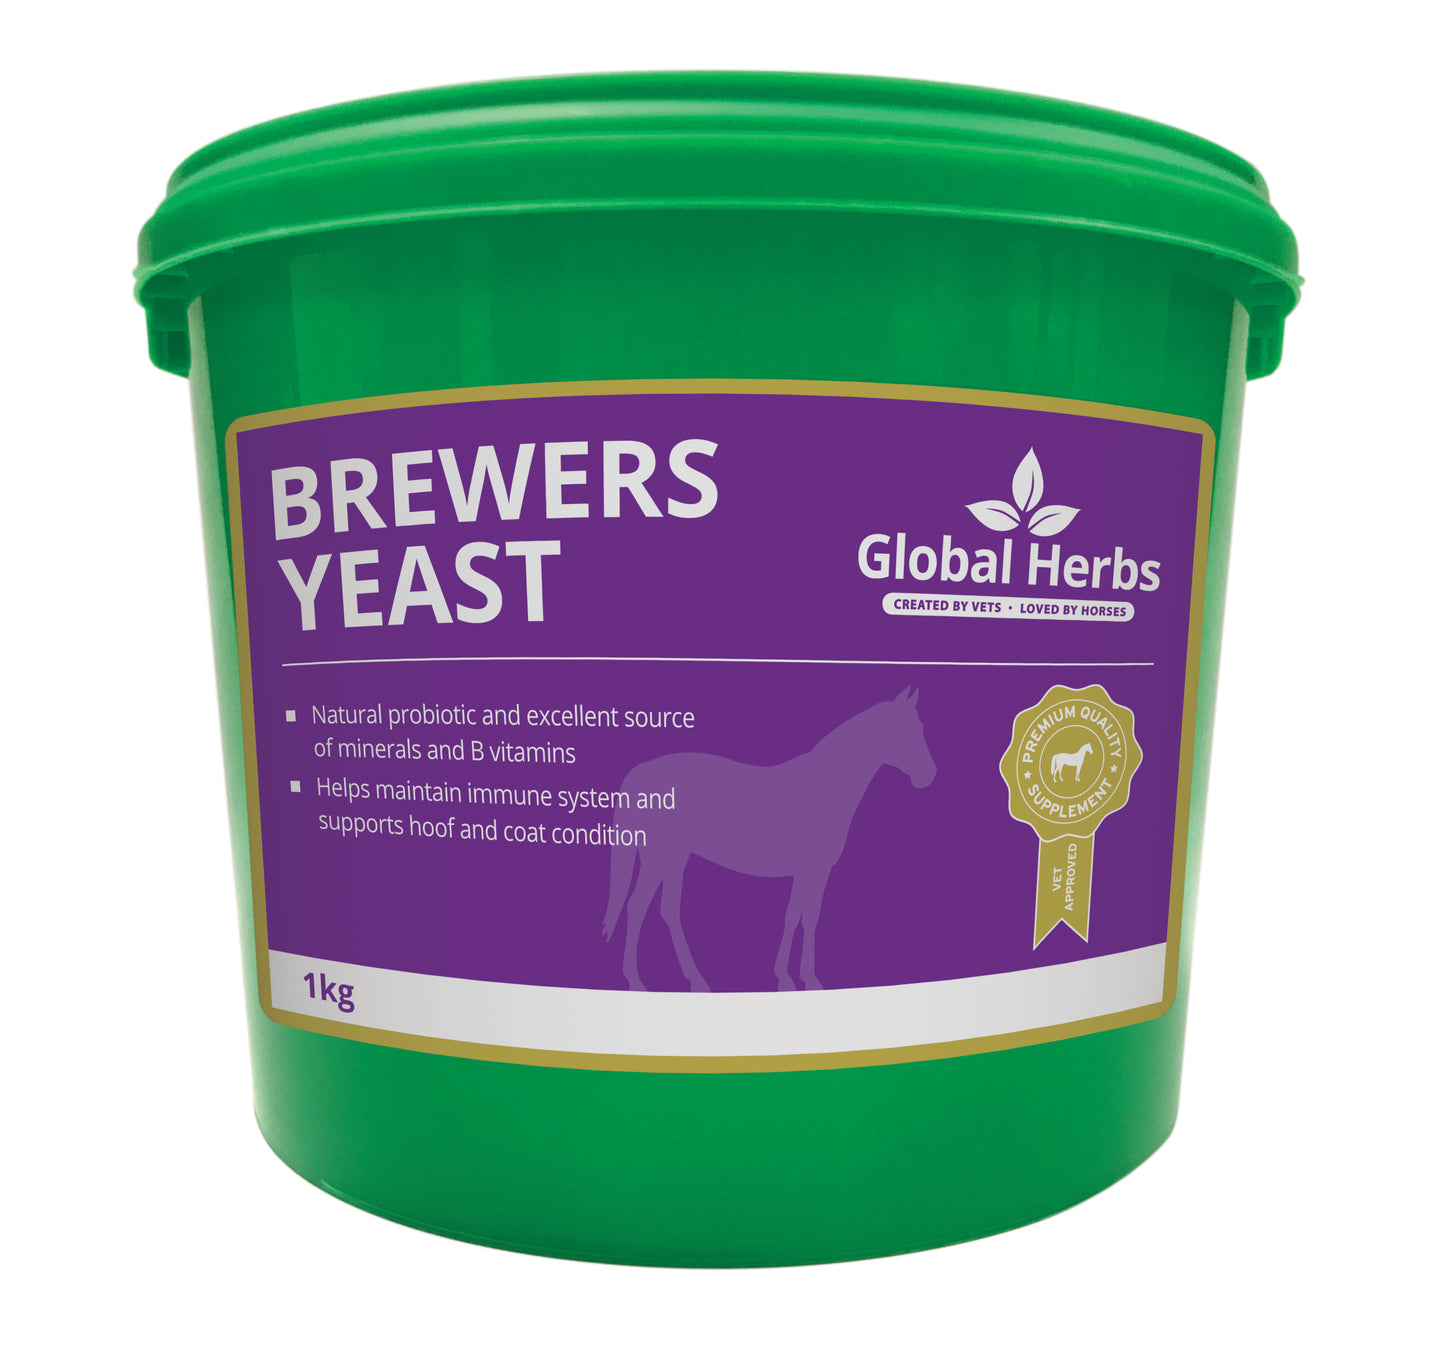 Brewers yeast 1kg - Global Herbs